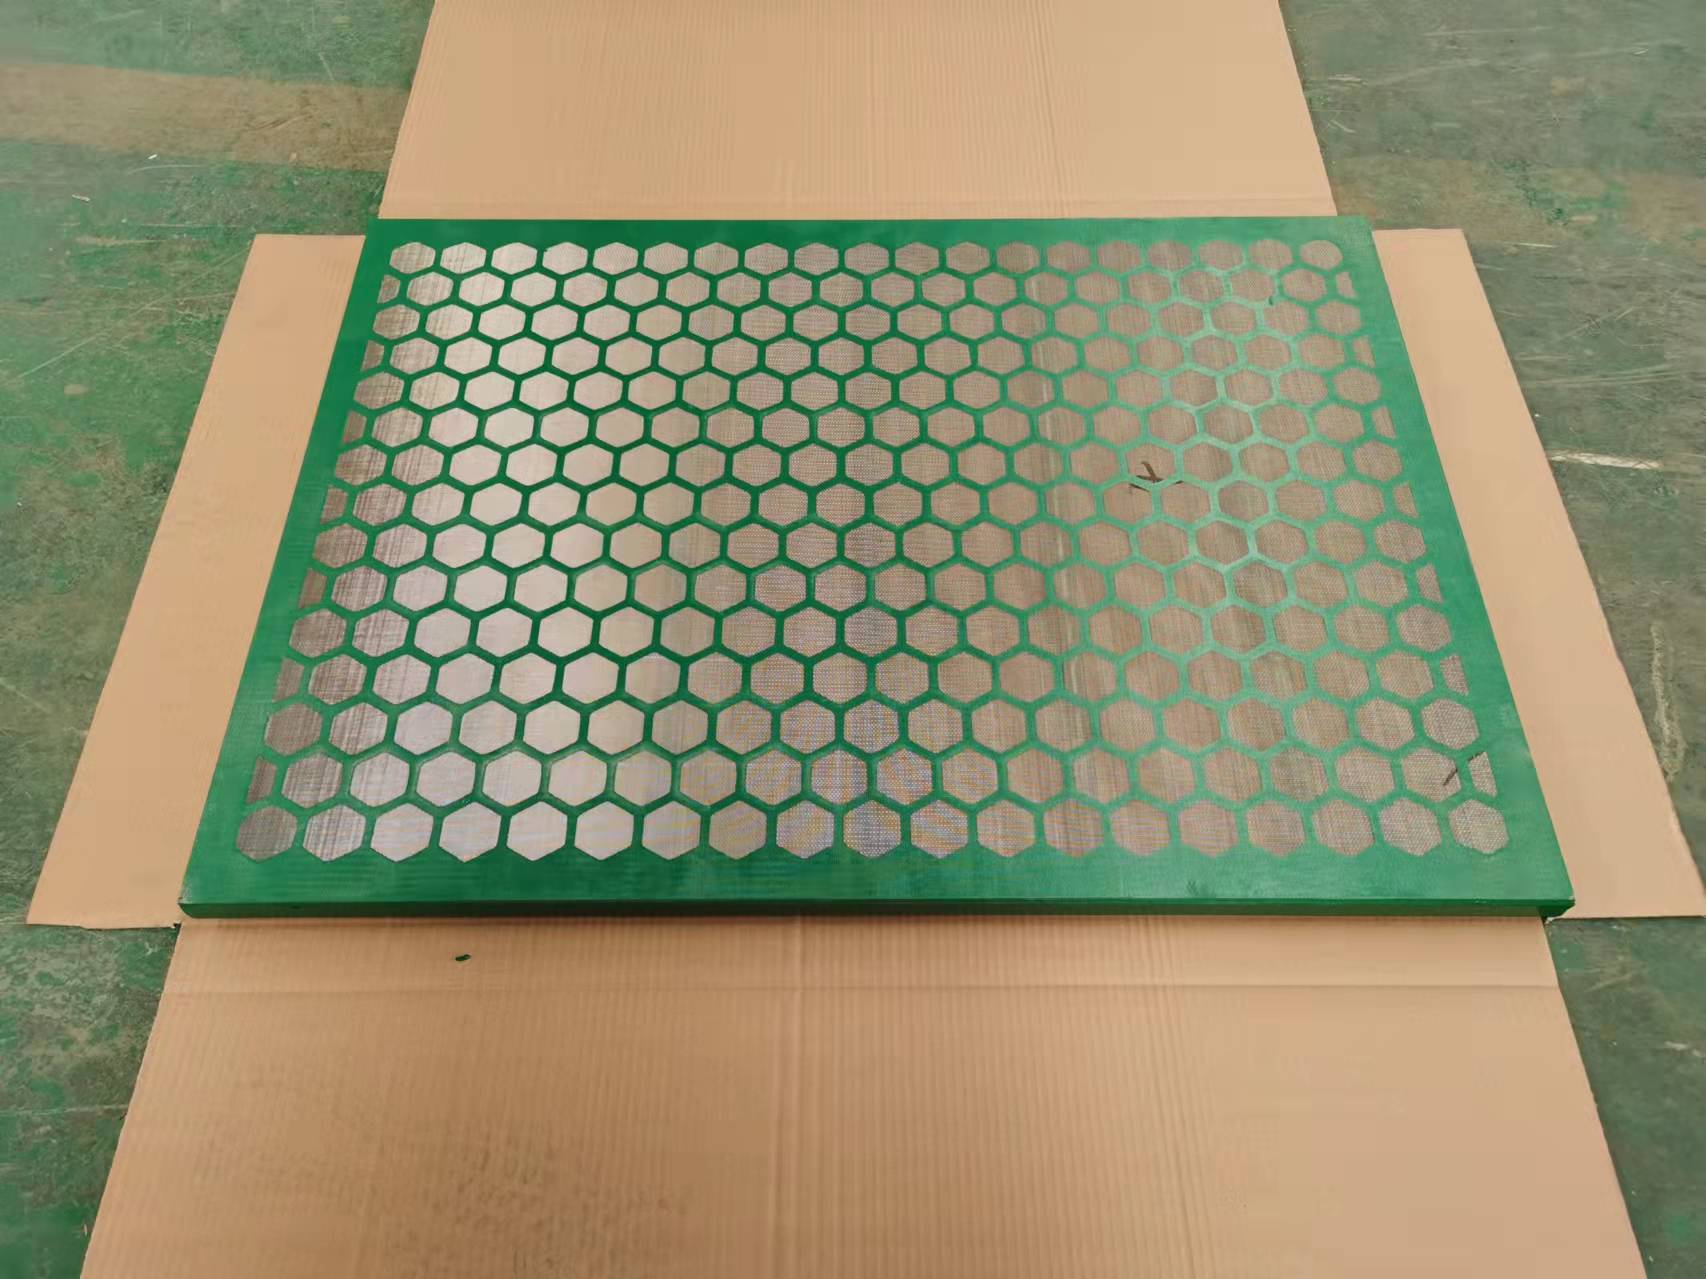 Hexagon tipo shale shaker Screen tiene más capacidad de tratamiento que el tipo de triángulo original.